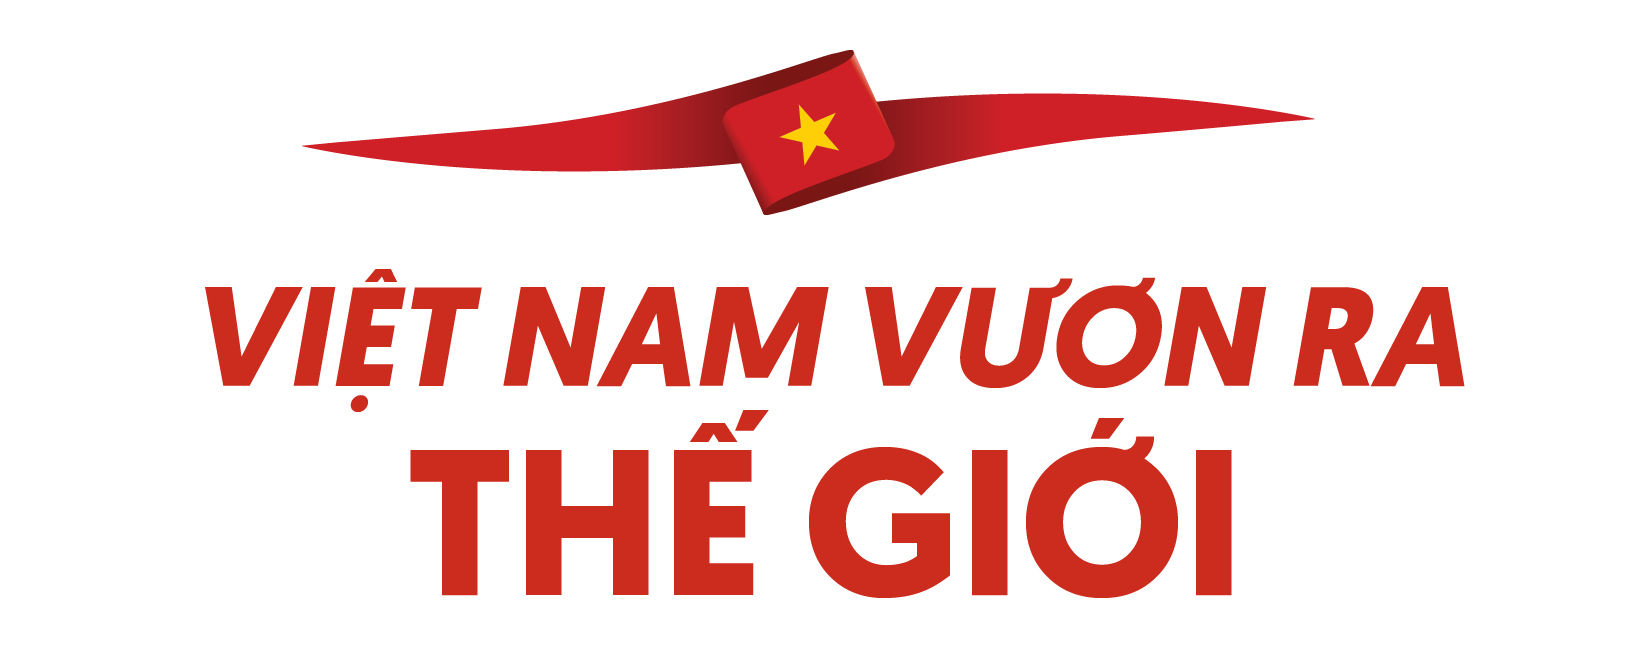 Đại sứ Việt Nam tại Mỹ Nguyễn Quốc Dũng: Tranh thủ tối đa ngoại lực để phát triển đất nước - Ảnh 1.